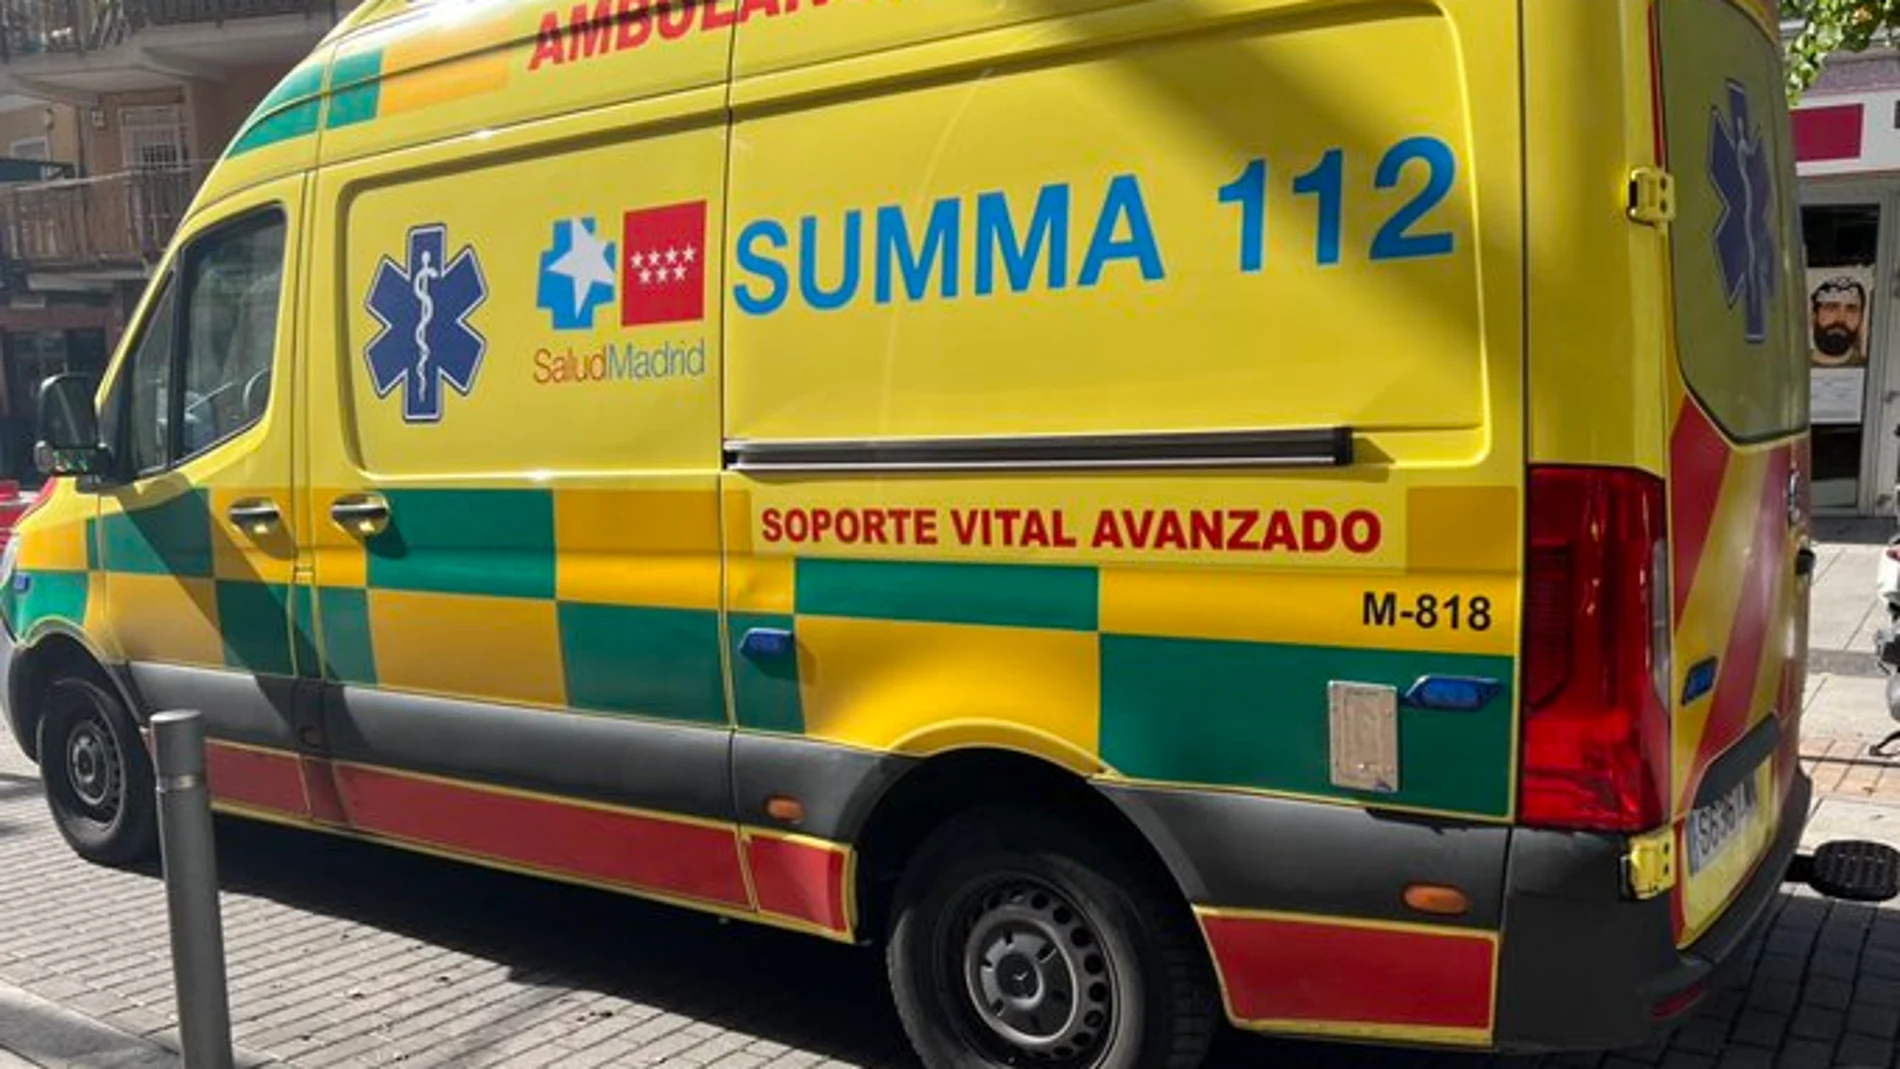 Ambulancia del Summa 112 